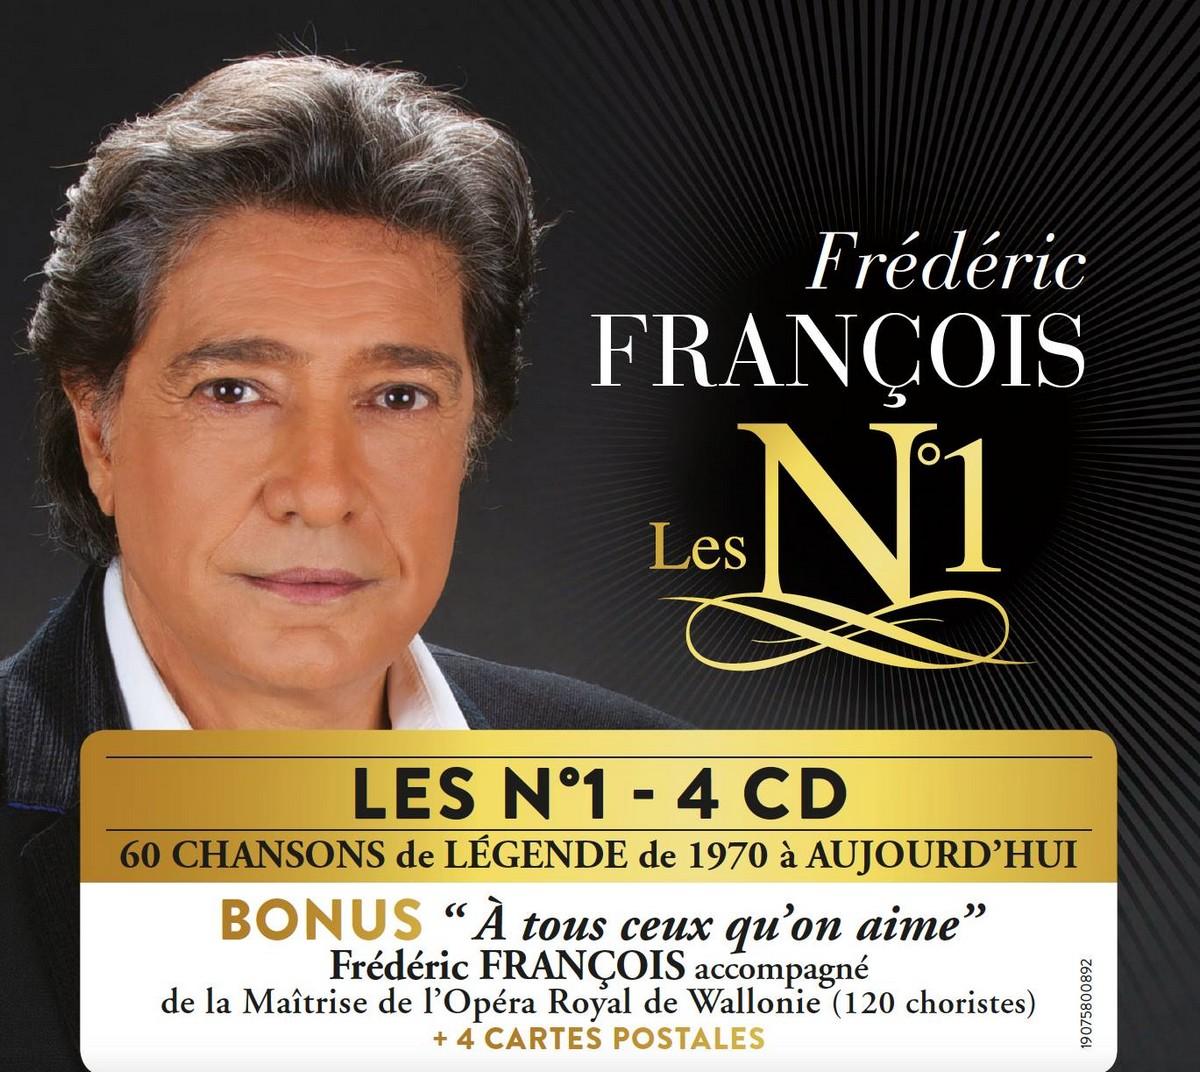 Frédéric FRANÇOIS revient avec "Les N°1"